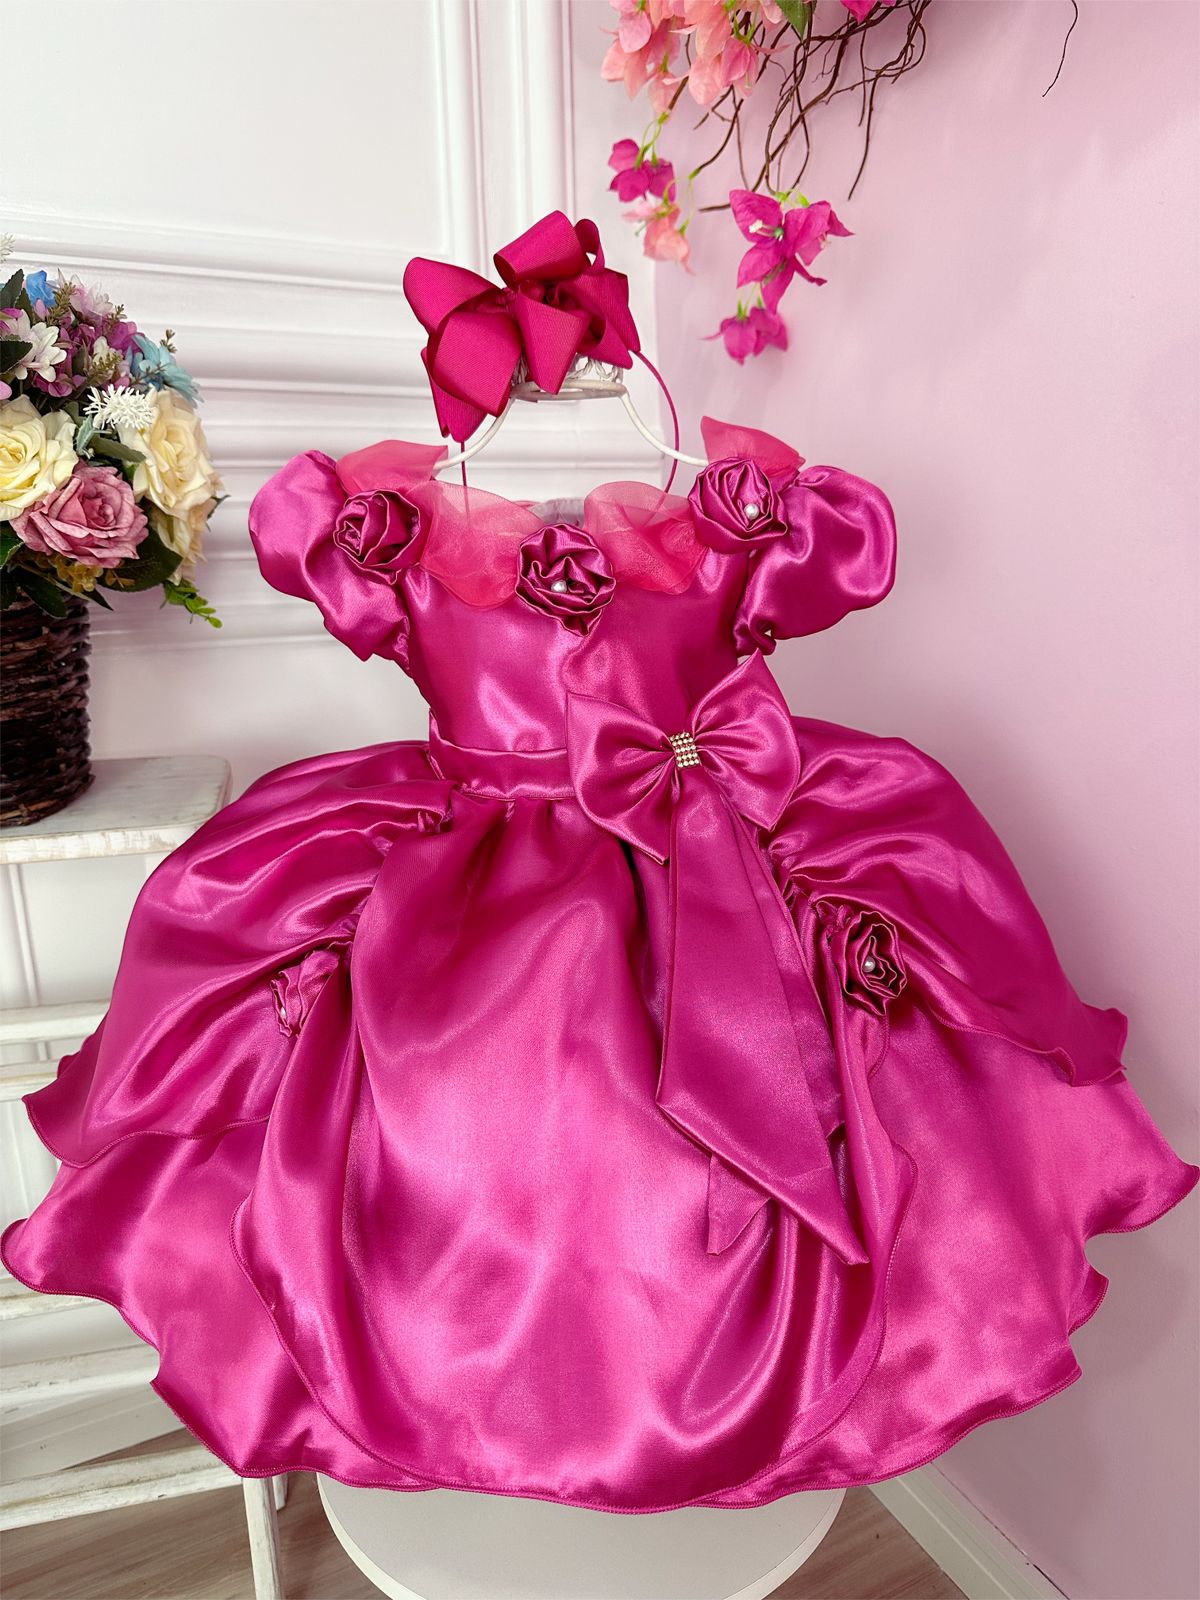 Vestido Infantil Bela Adormecia Pink Aplique Flor Princesas